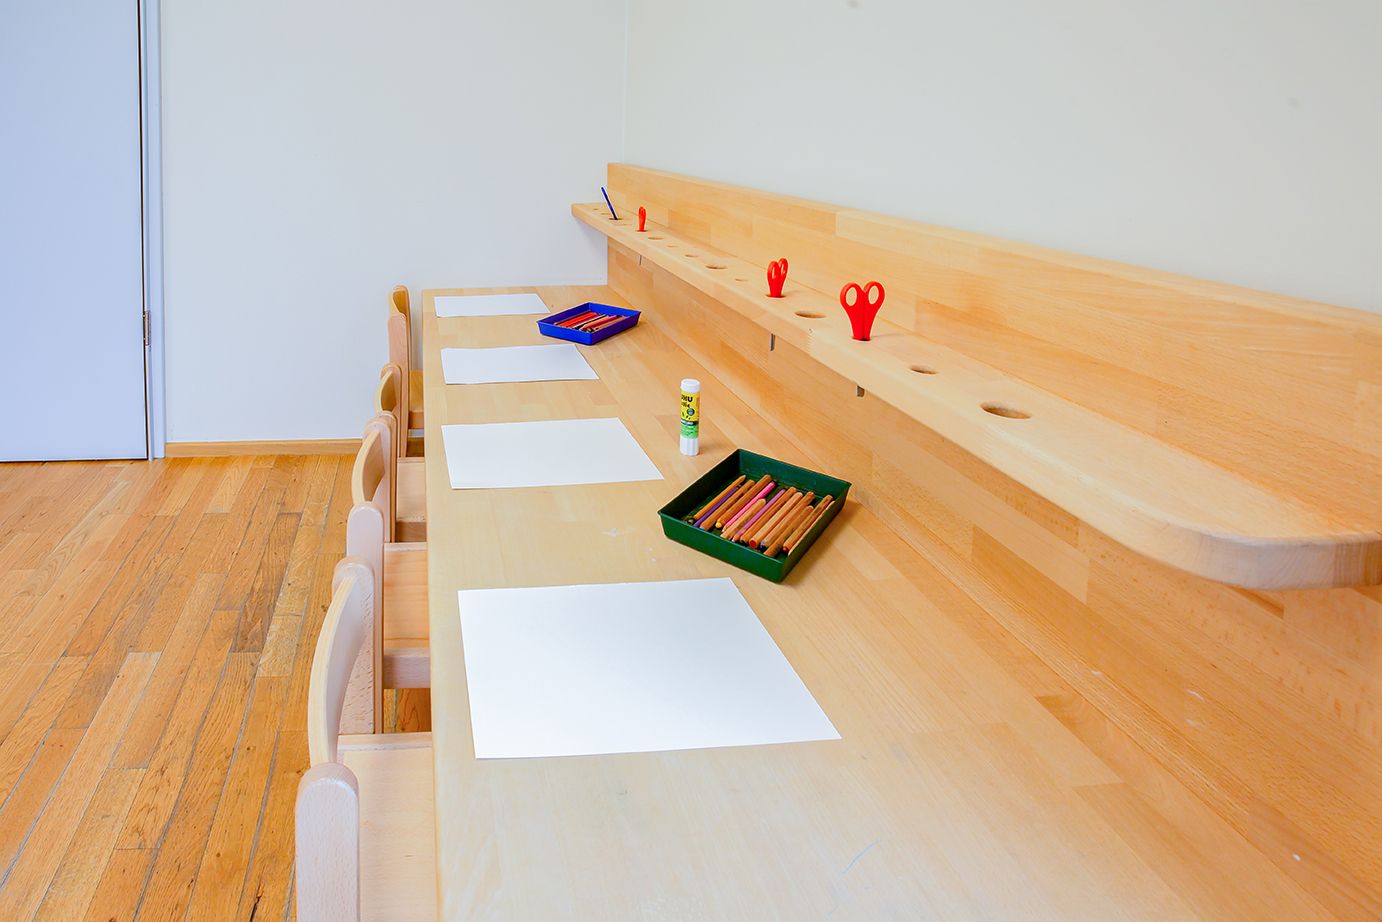 On y voit un banc en bois surmonté d'une table. Dans la table, il y a un rebord avec des trous ronds dans lesquels sont insérés des ciseaux. Nous choisissons nos équipements pour qu'ils fonctionnent selon la pédagogie Pikler, qui met l'accent sur le développement de l'autonomie des enfants.